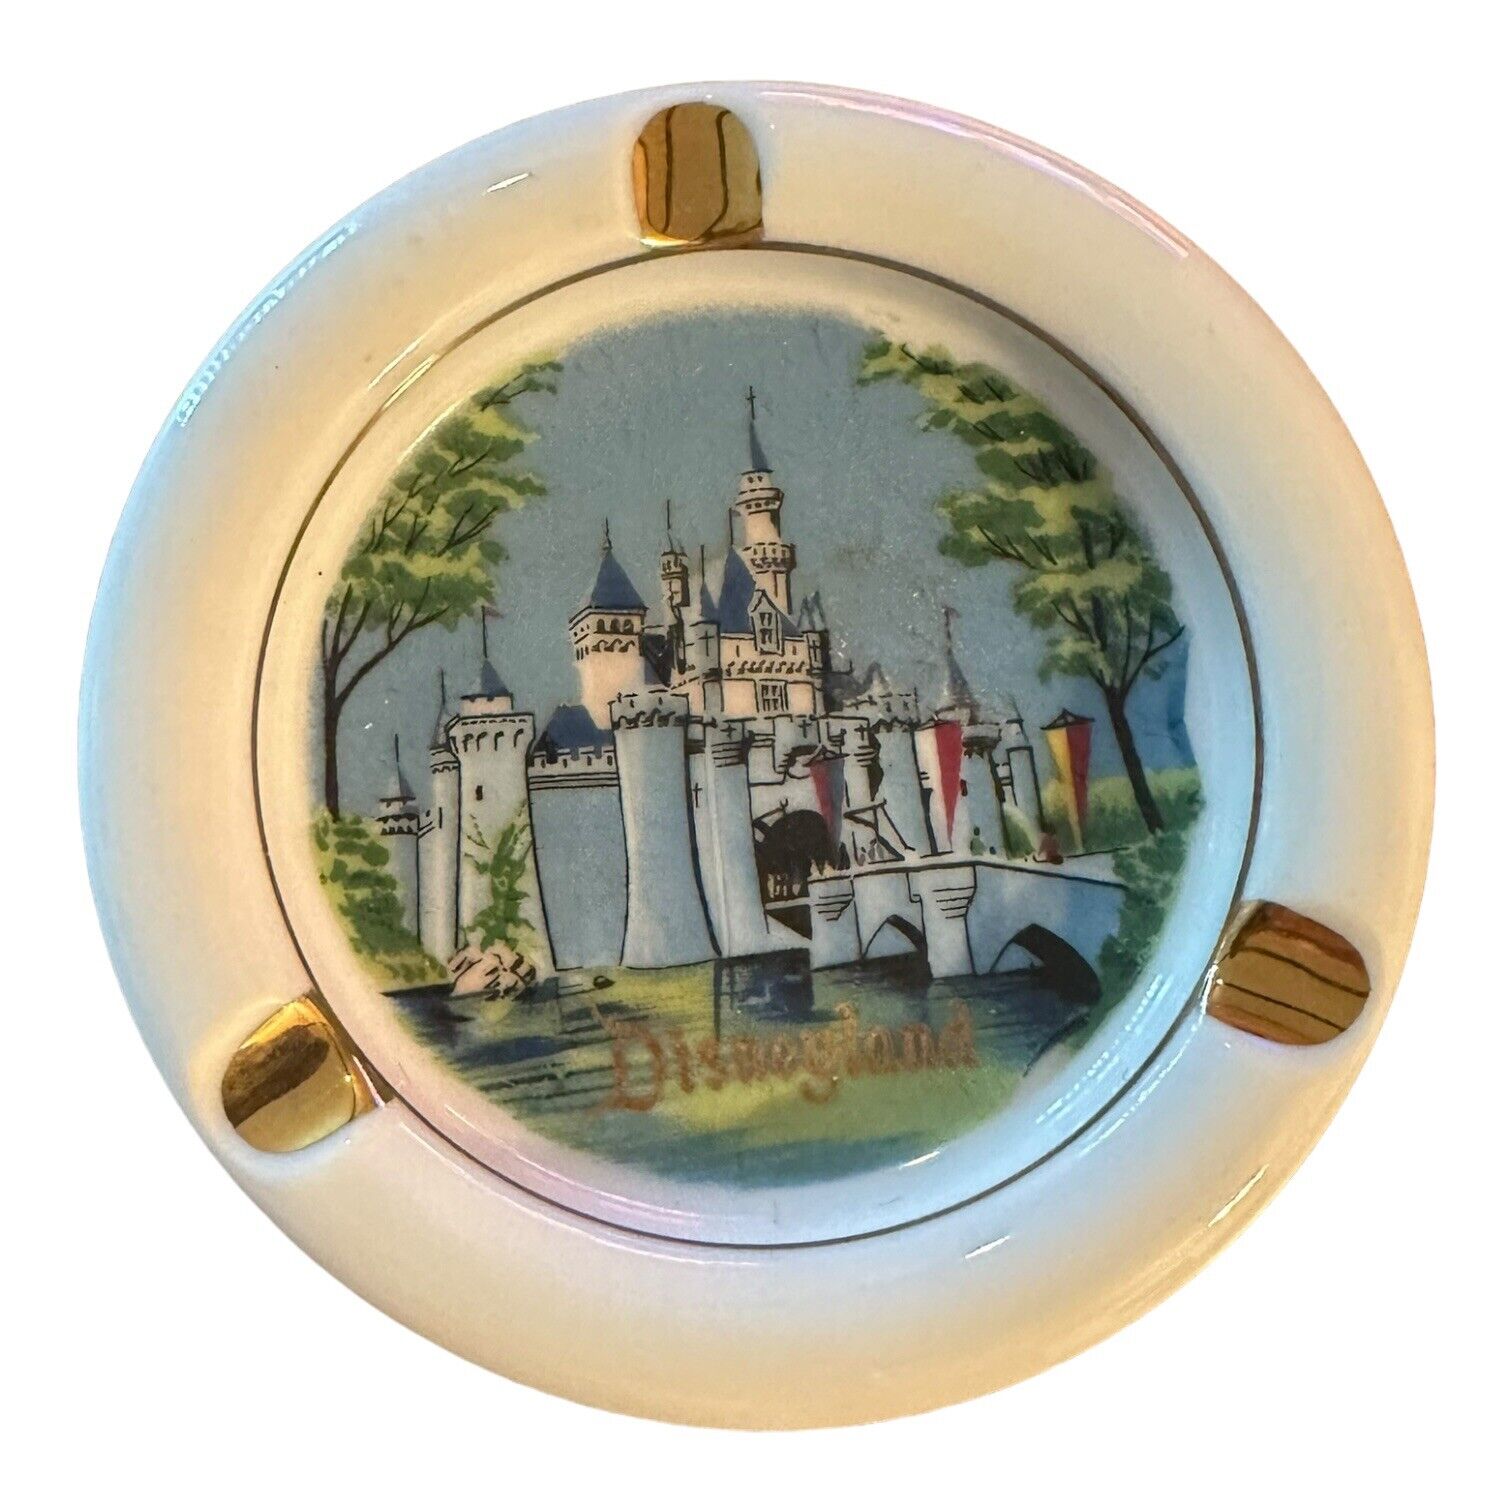 Vintage Disneyland Castle Porcelain Ashtray 1960s Made in JAPAN